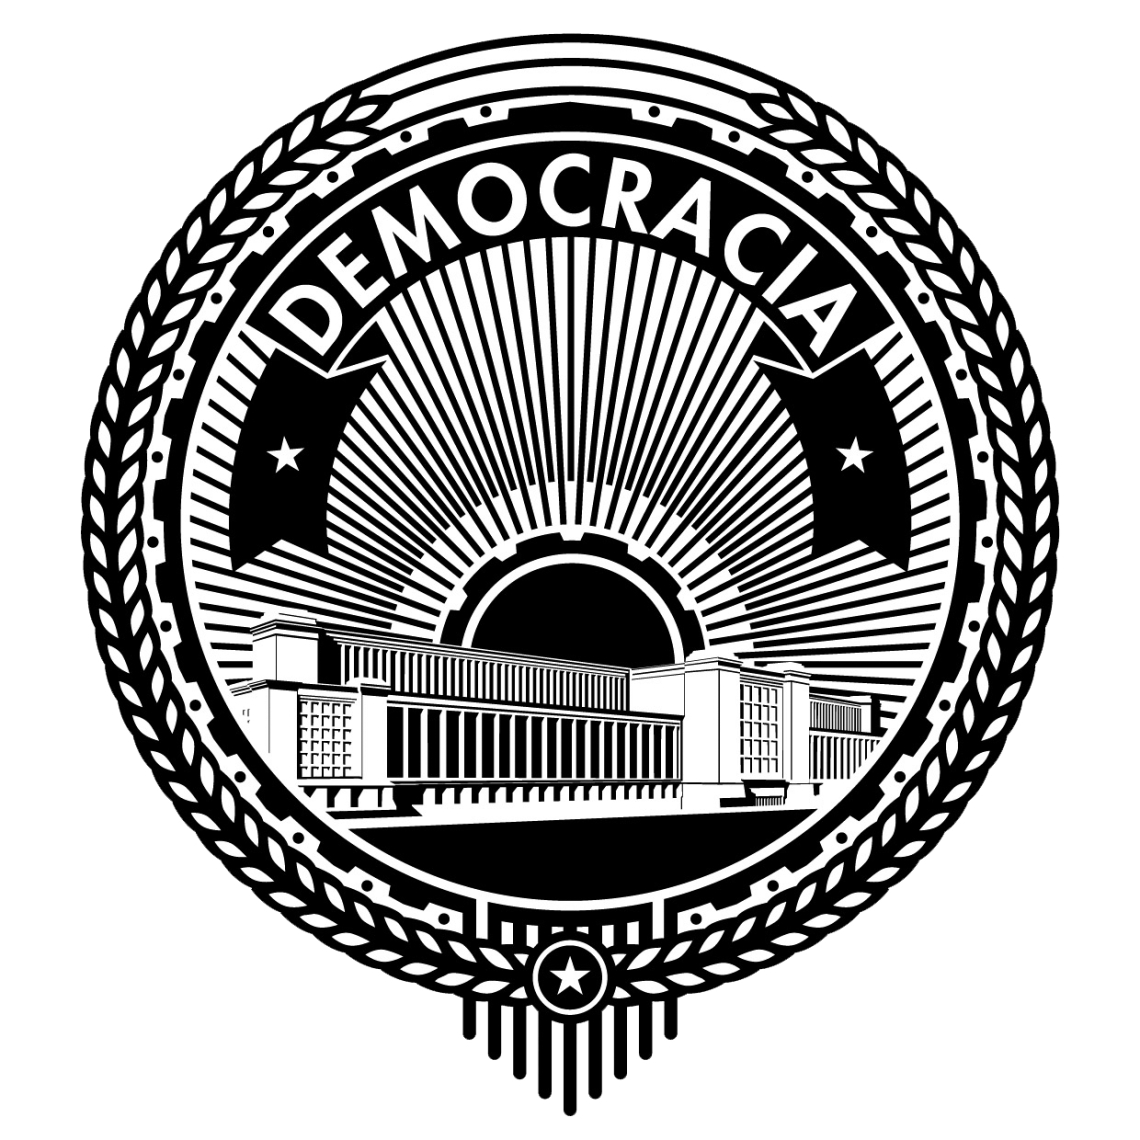 DEMOCRACIA_LOGO copy